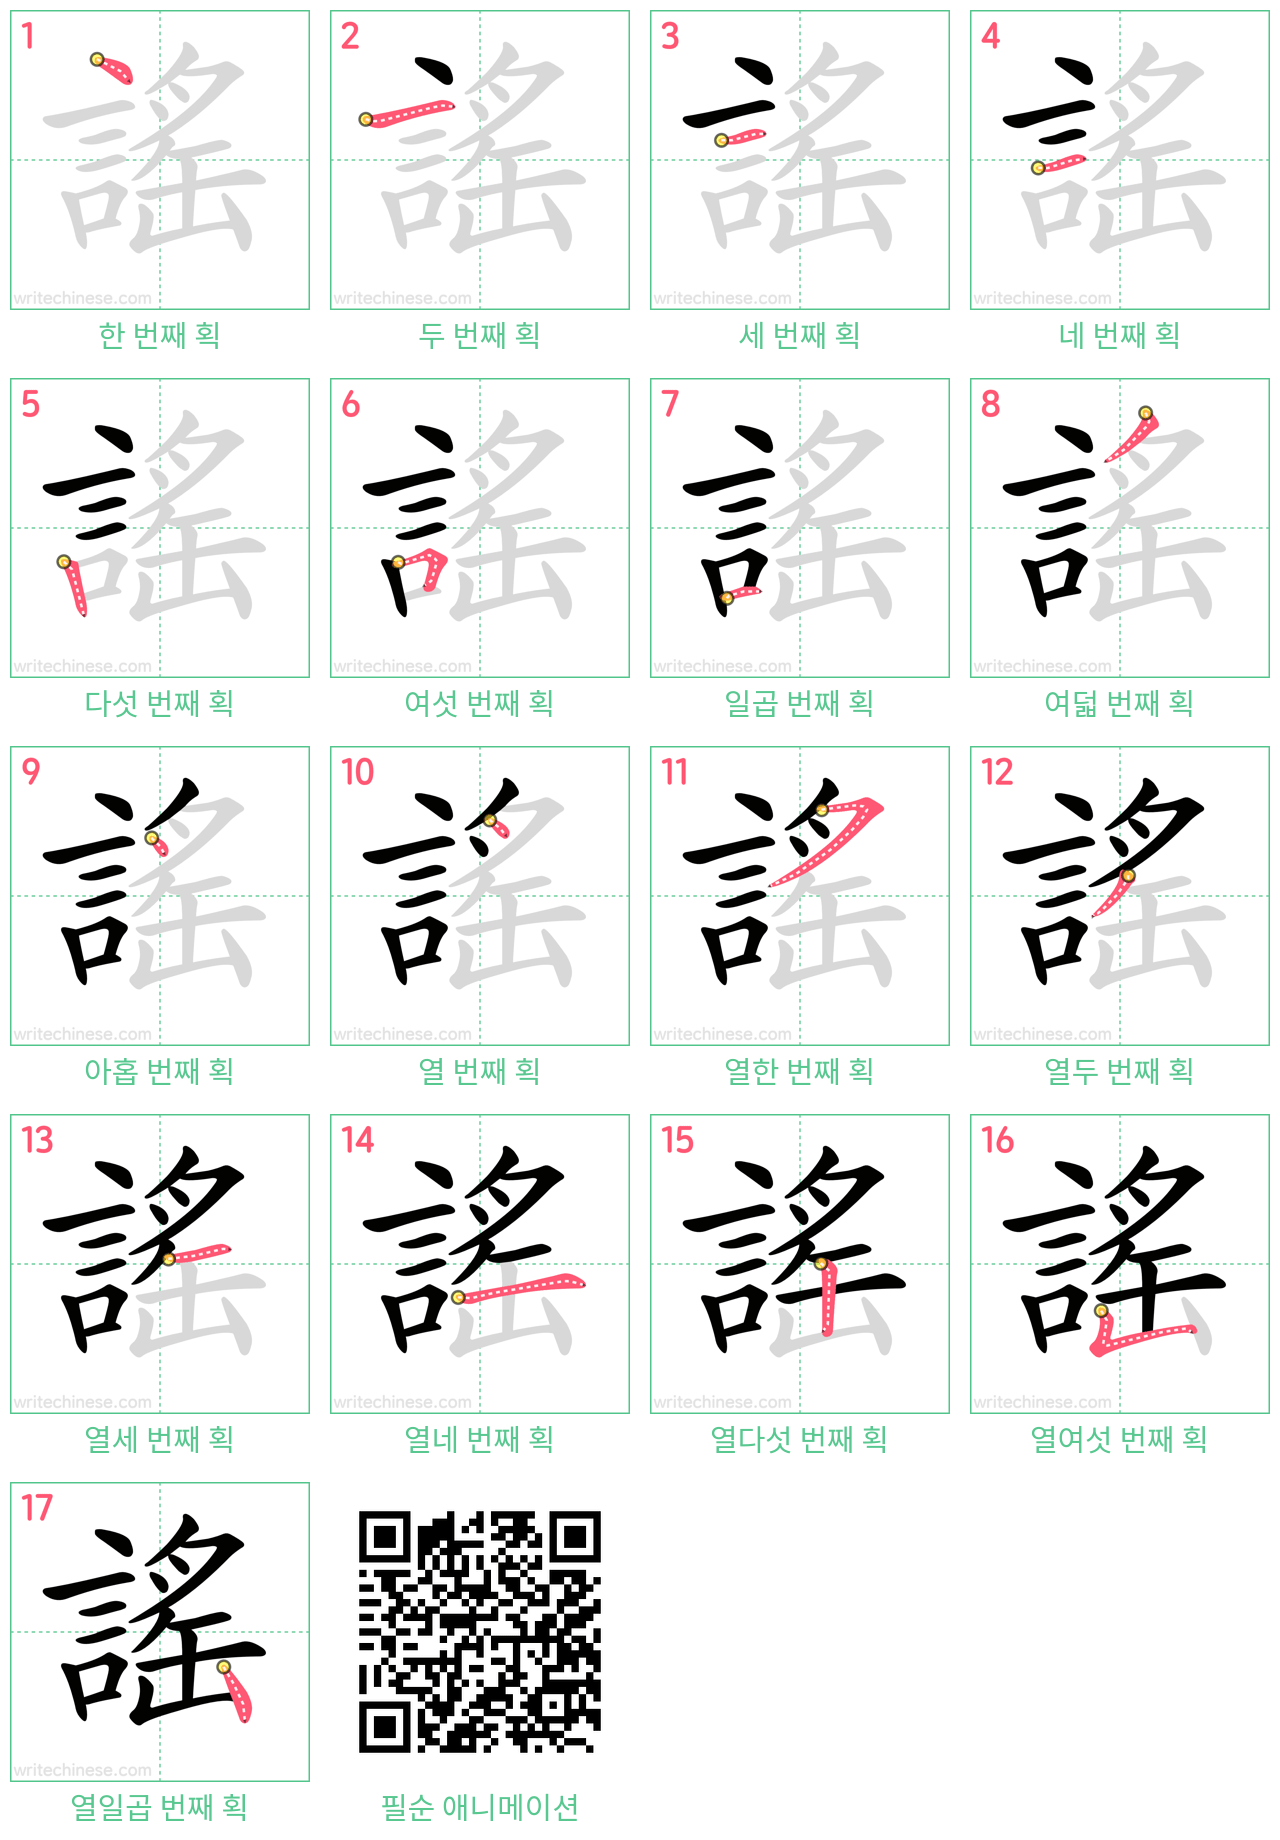 謠 step-by-step stroke order diagrams